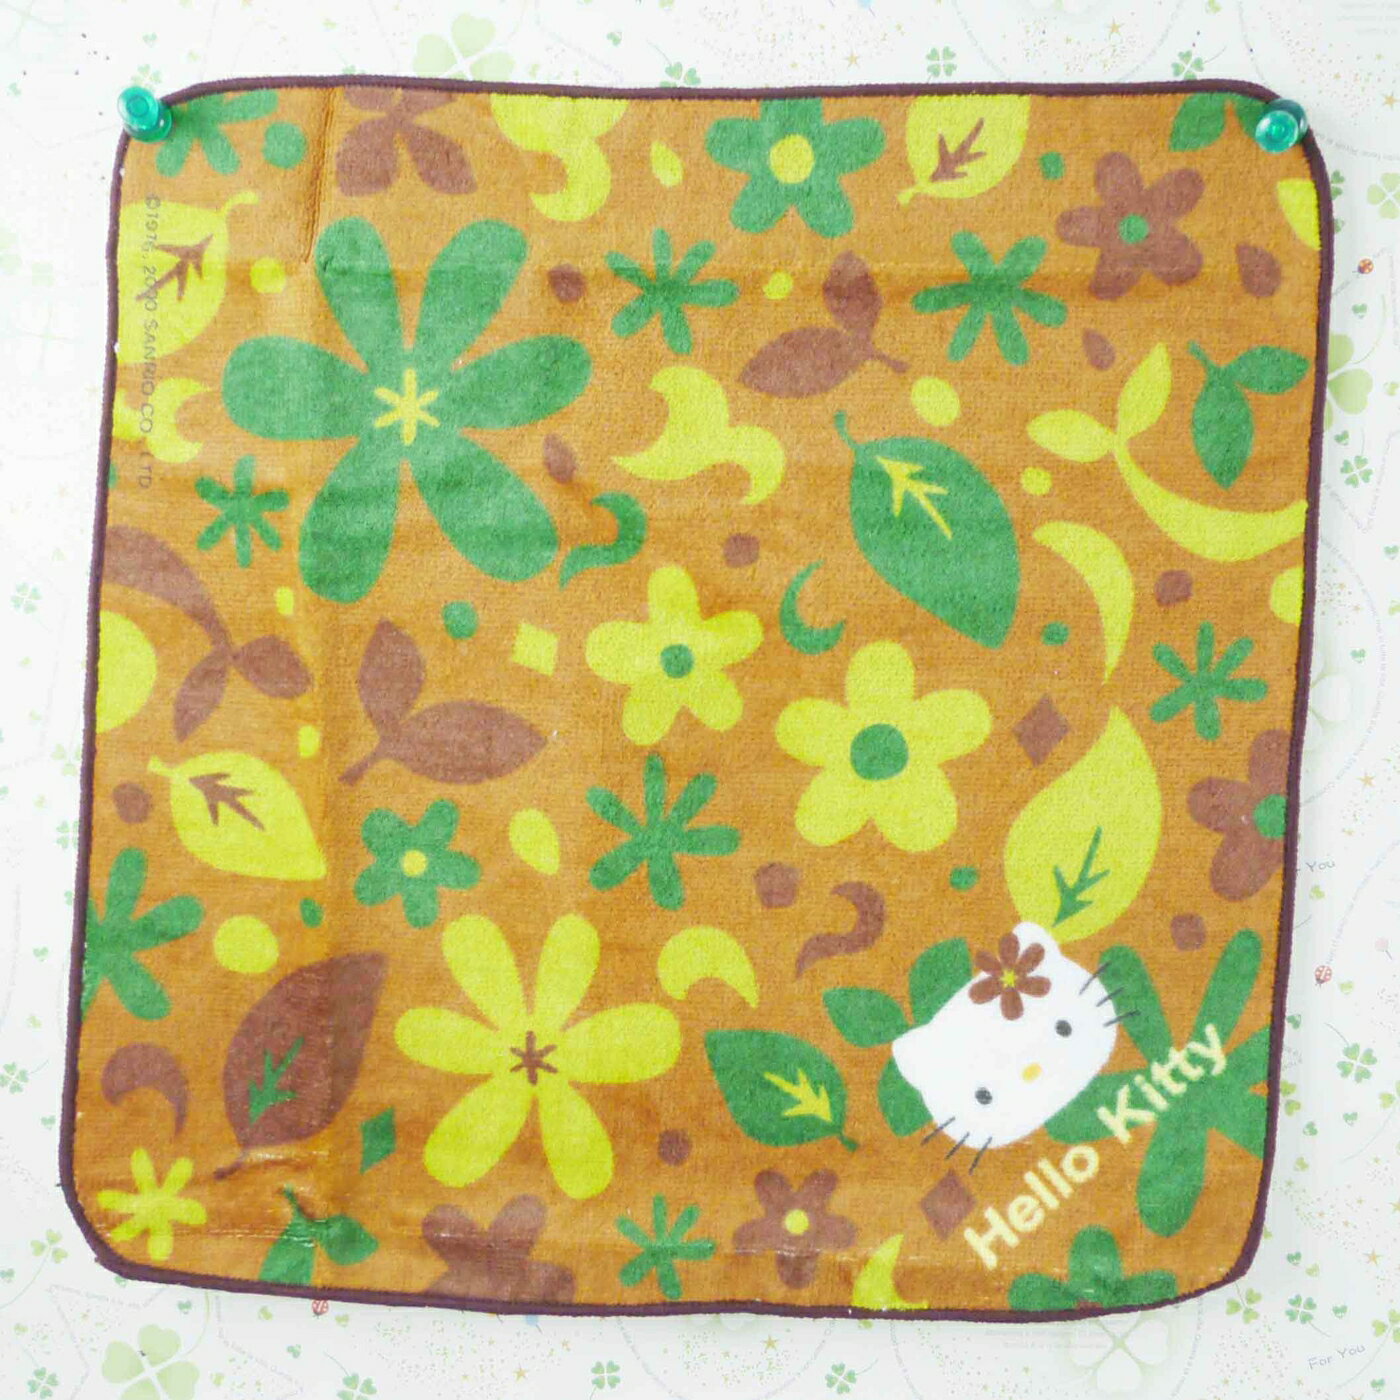 【震撼精品百貨】Hello Kitty 凱蒂貓 方巾/毛巾-迷彩樹葉 震撼日式精品百貨